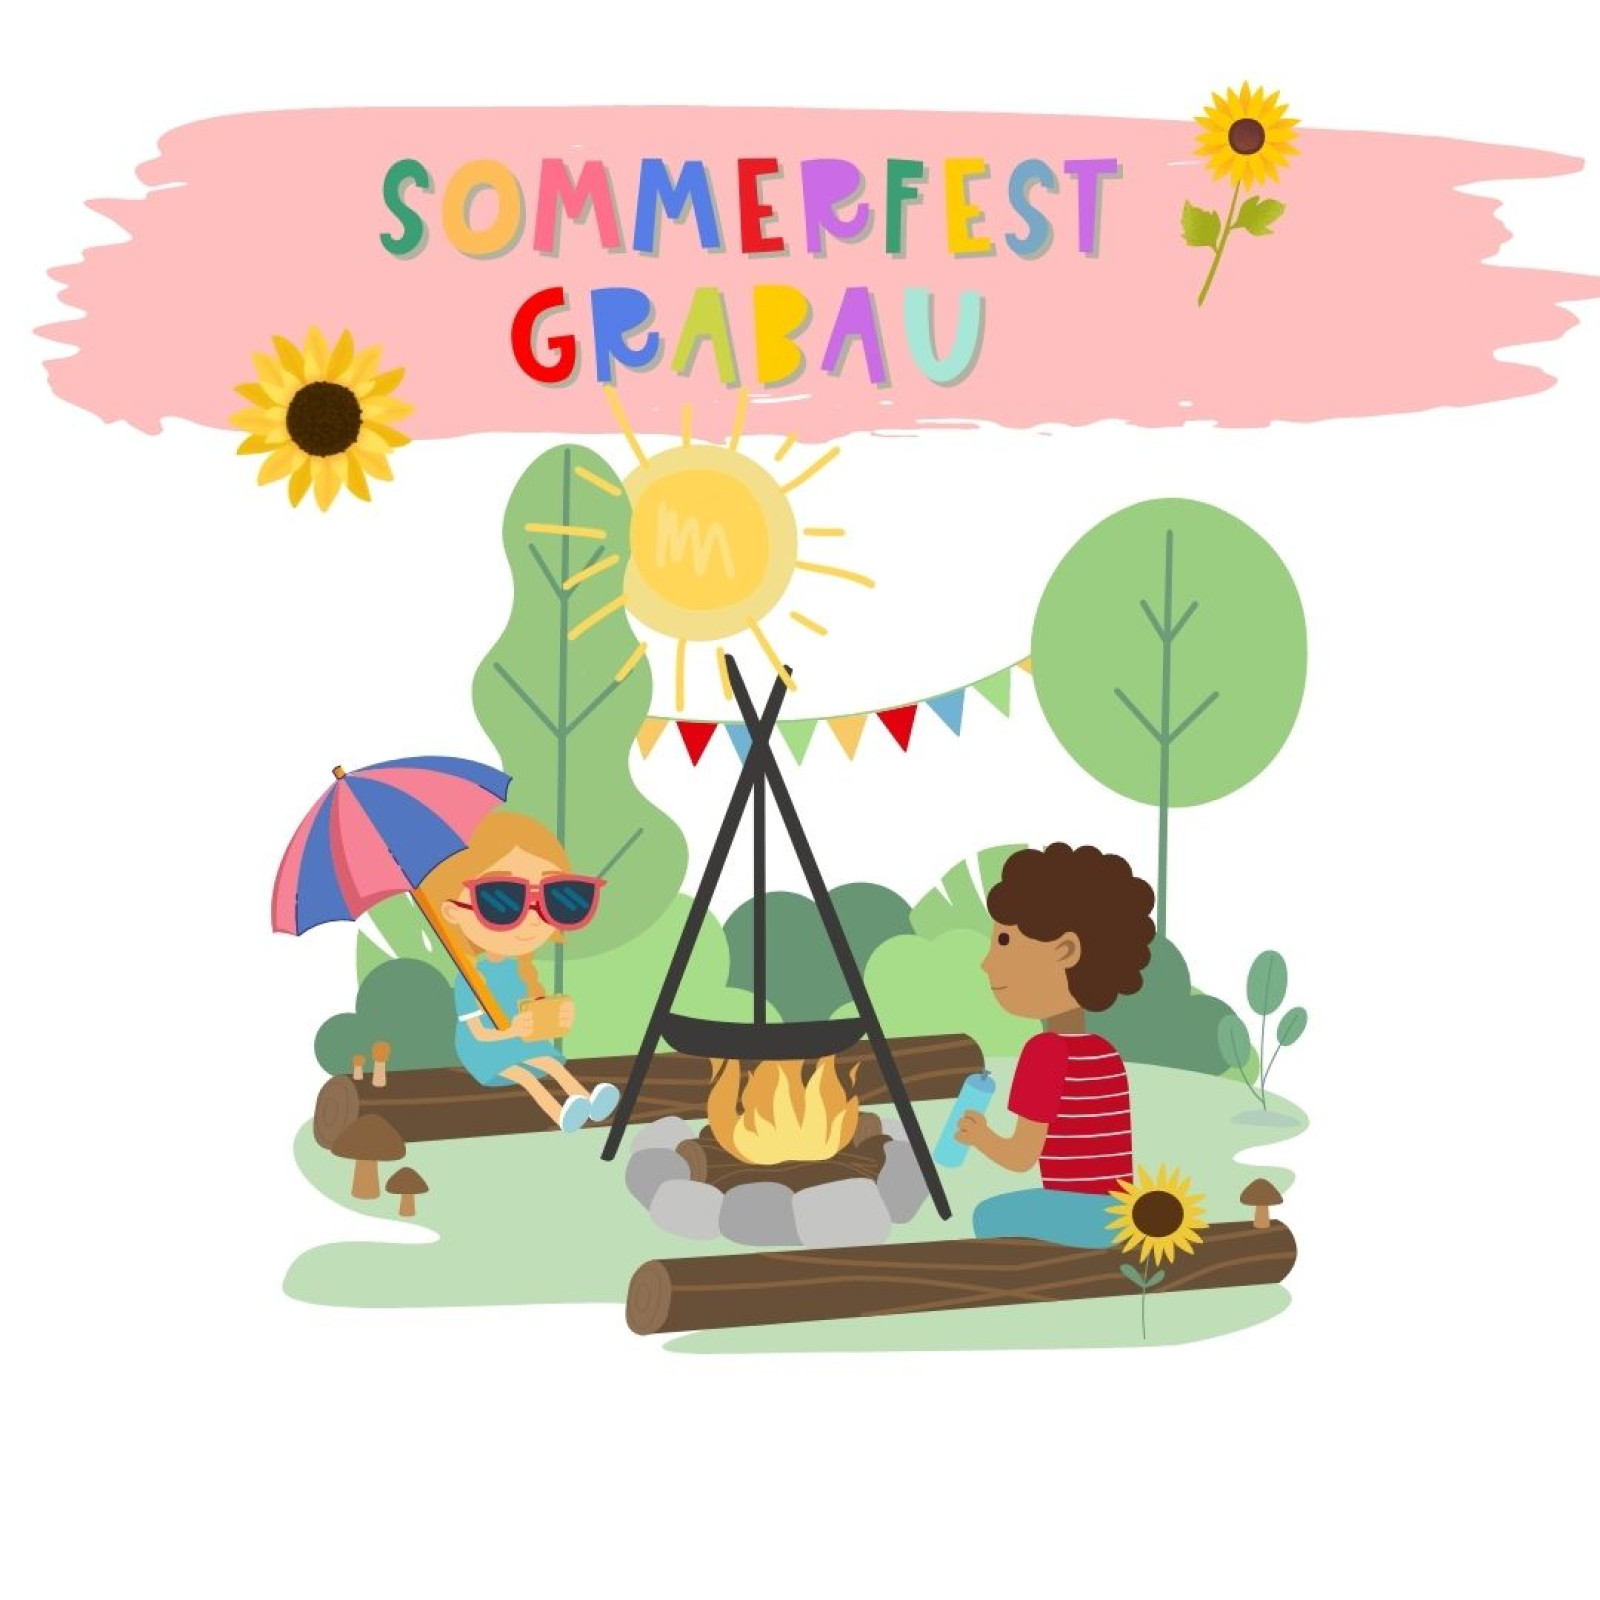 Sommerfest Grabau v3